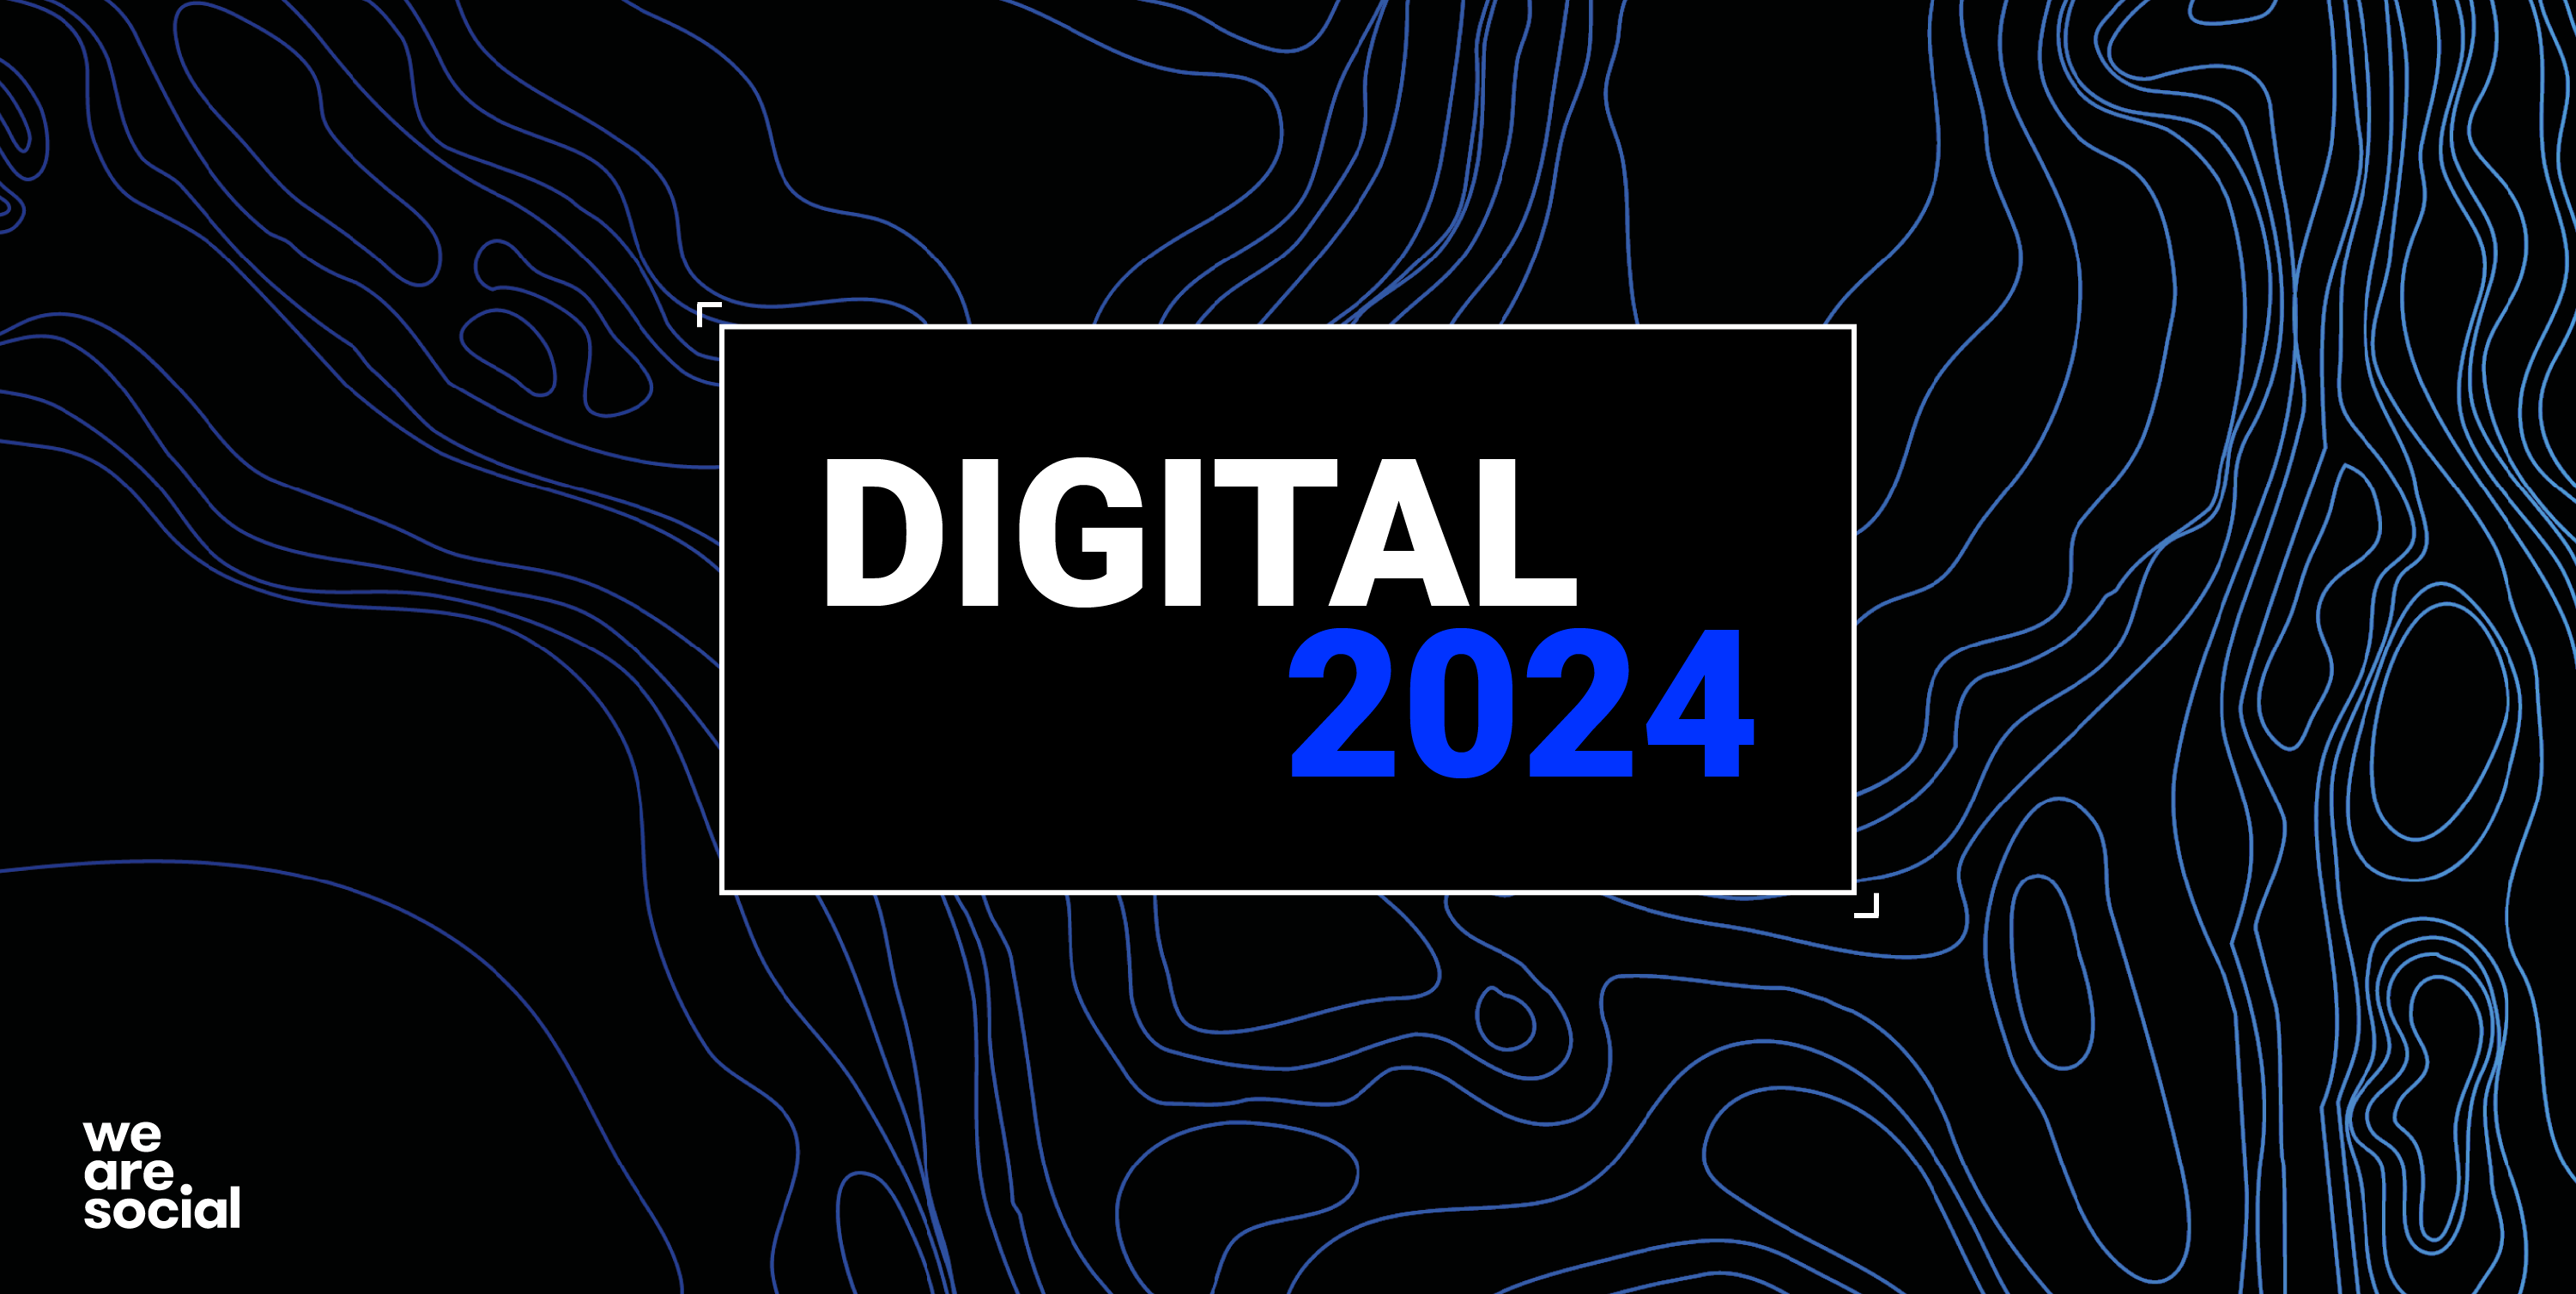 Digital 2024: 5 billion social media users - We Are Social USA